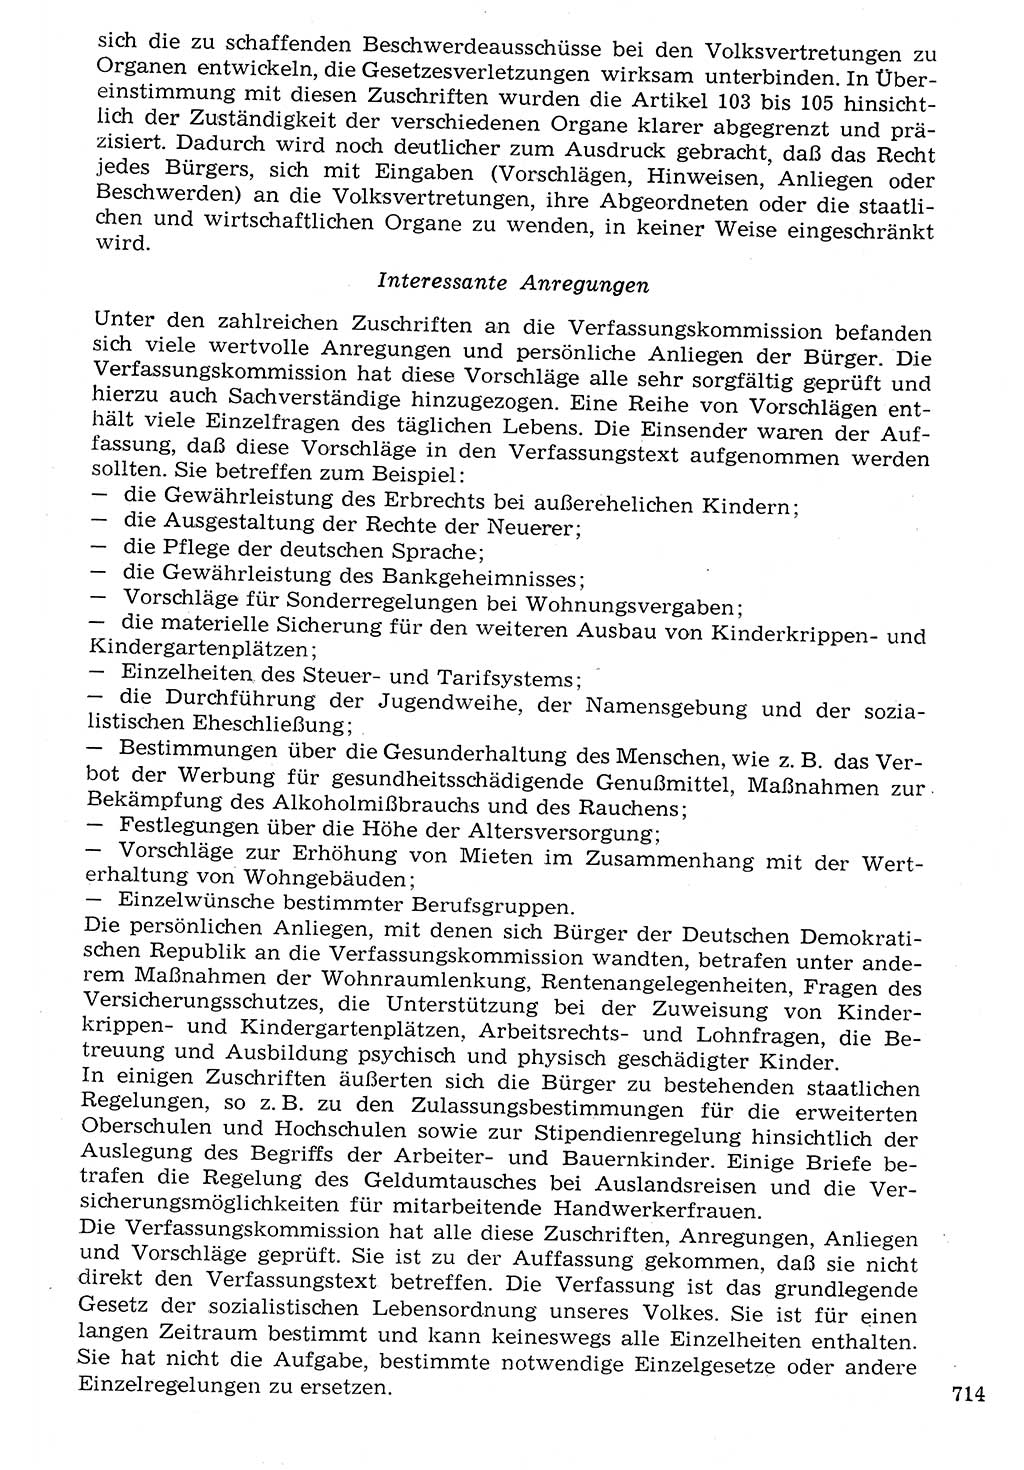 Staat und Recht (StuR), 17. Jahrgang [Deutsche Demokratische Republik (DDR)] 1968, Seite 714 (StuR DDR 1968, S. 714)